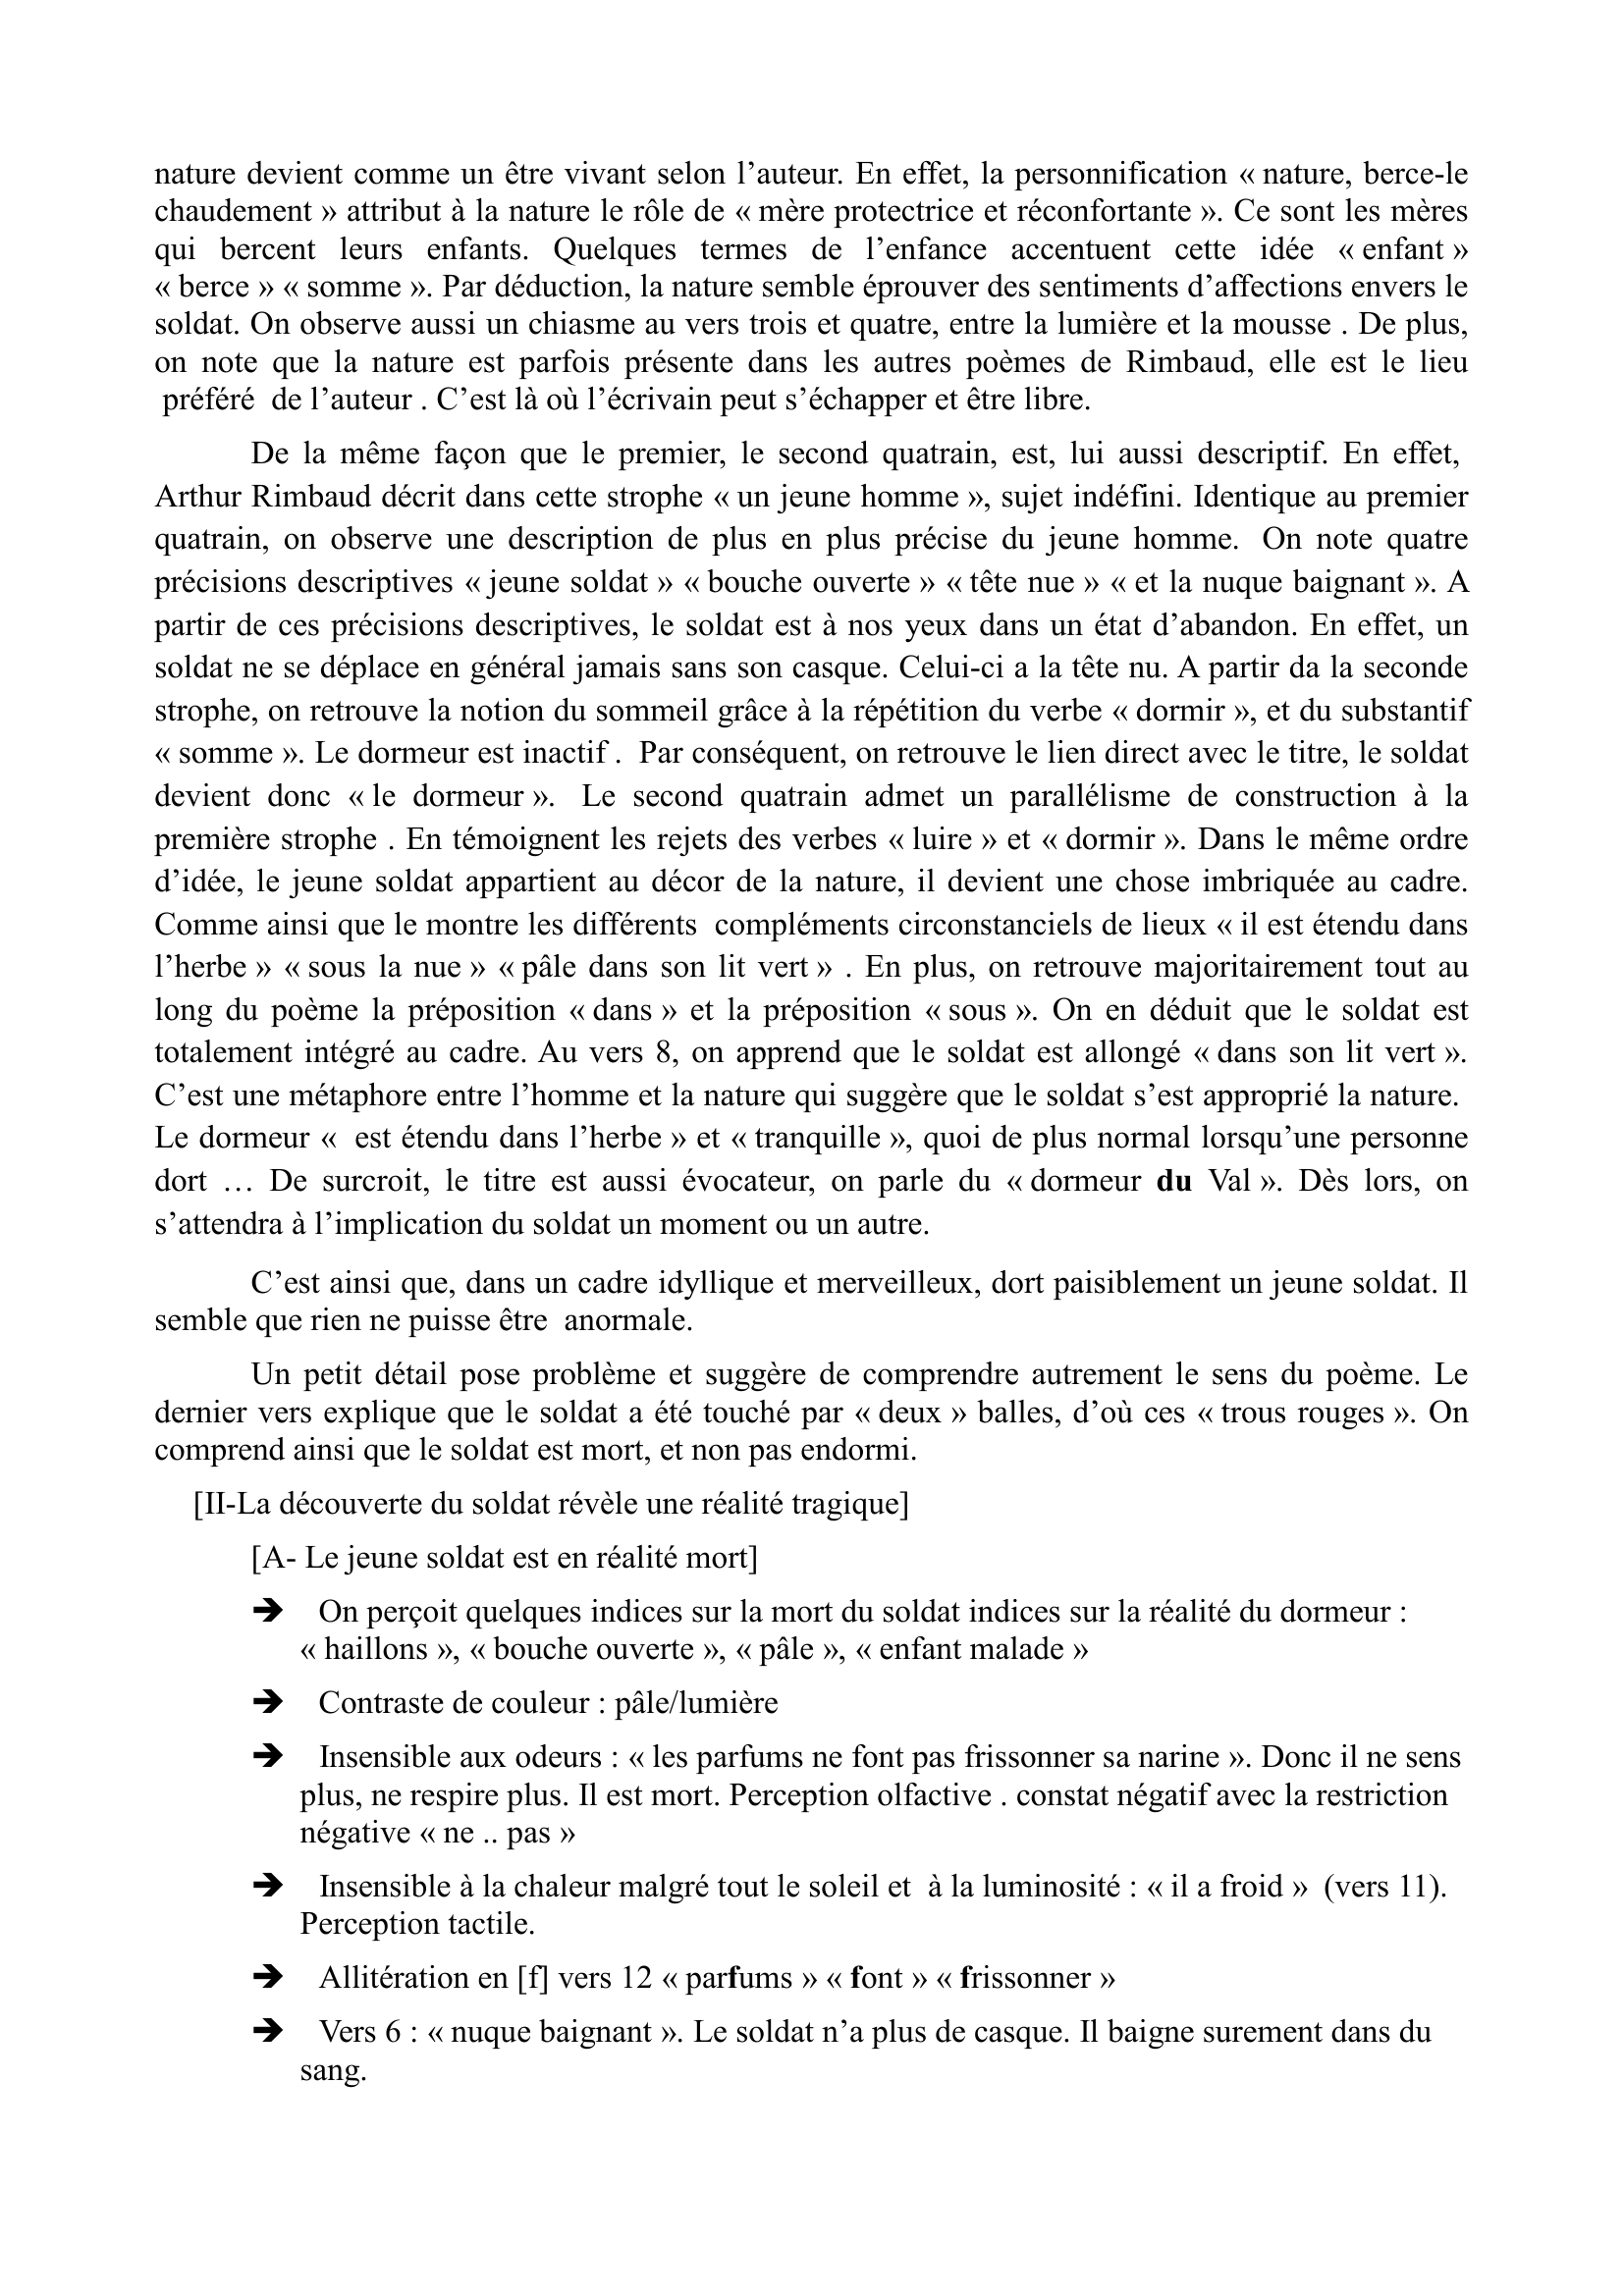 Prévisualisation du document Commentaire Composé Le dormeur du Val de Rimbaud